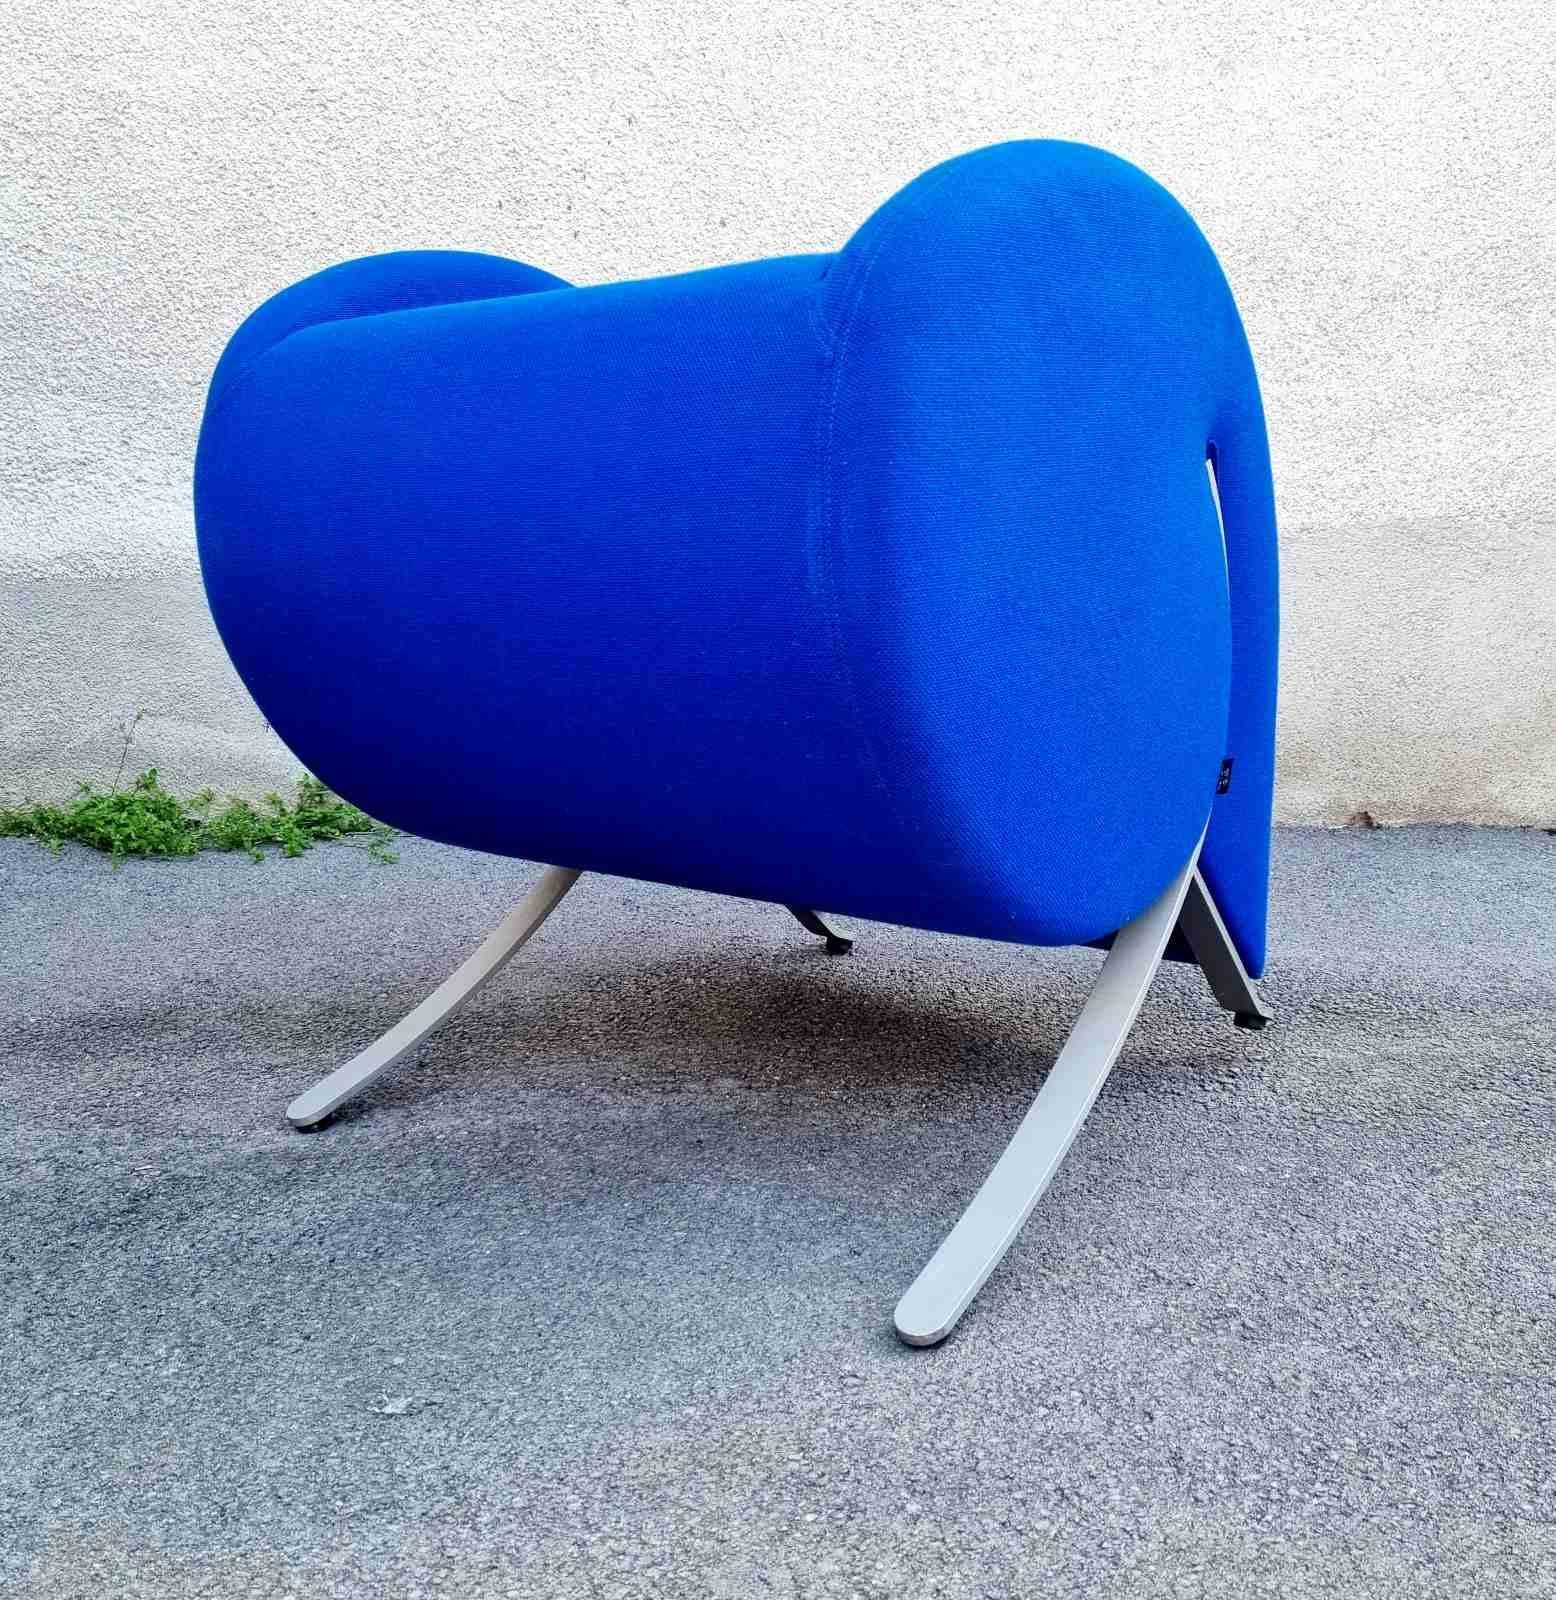 Virgola est un fauteuil conçu par Yaakov Kaufman en 1991 pour Arflex.

Son nom est clairement inspiré par la forme qui le caractérise, qui est précisément celle du signe de ponctuation.

De face, il peut ressembler à un simple fauteuil, mais si vous